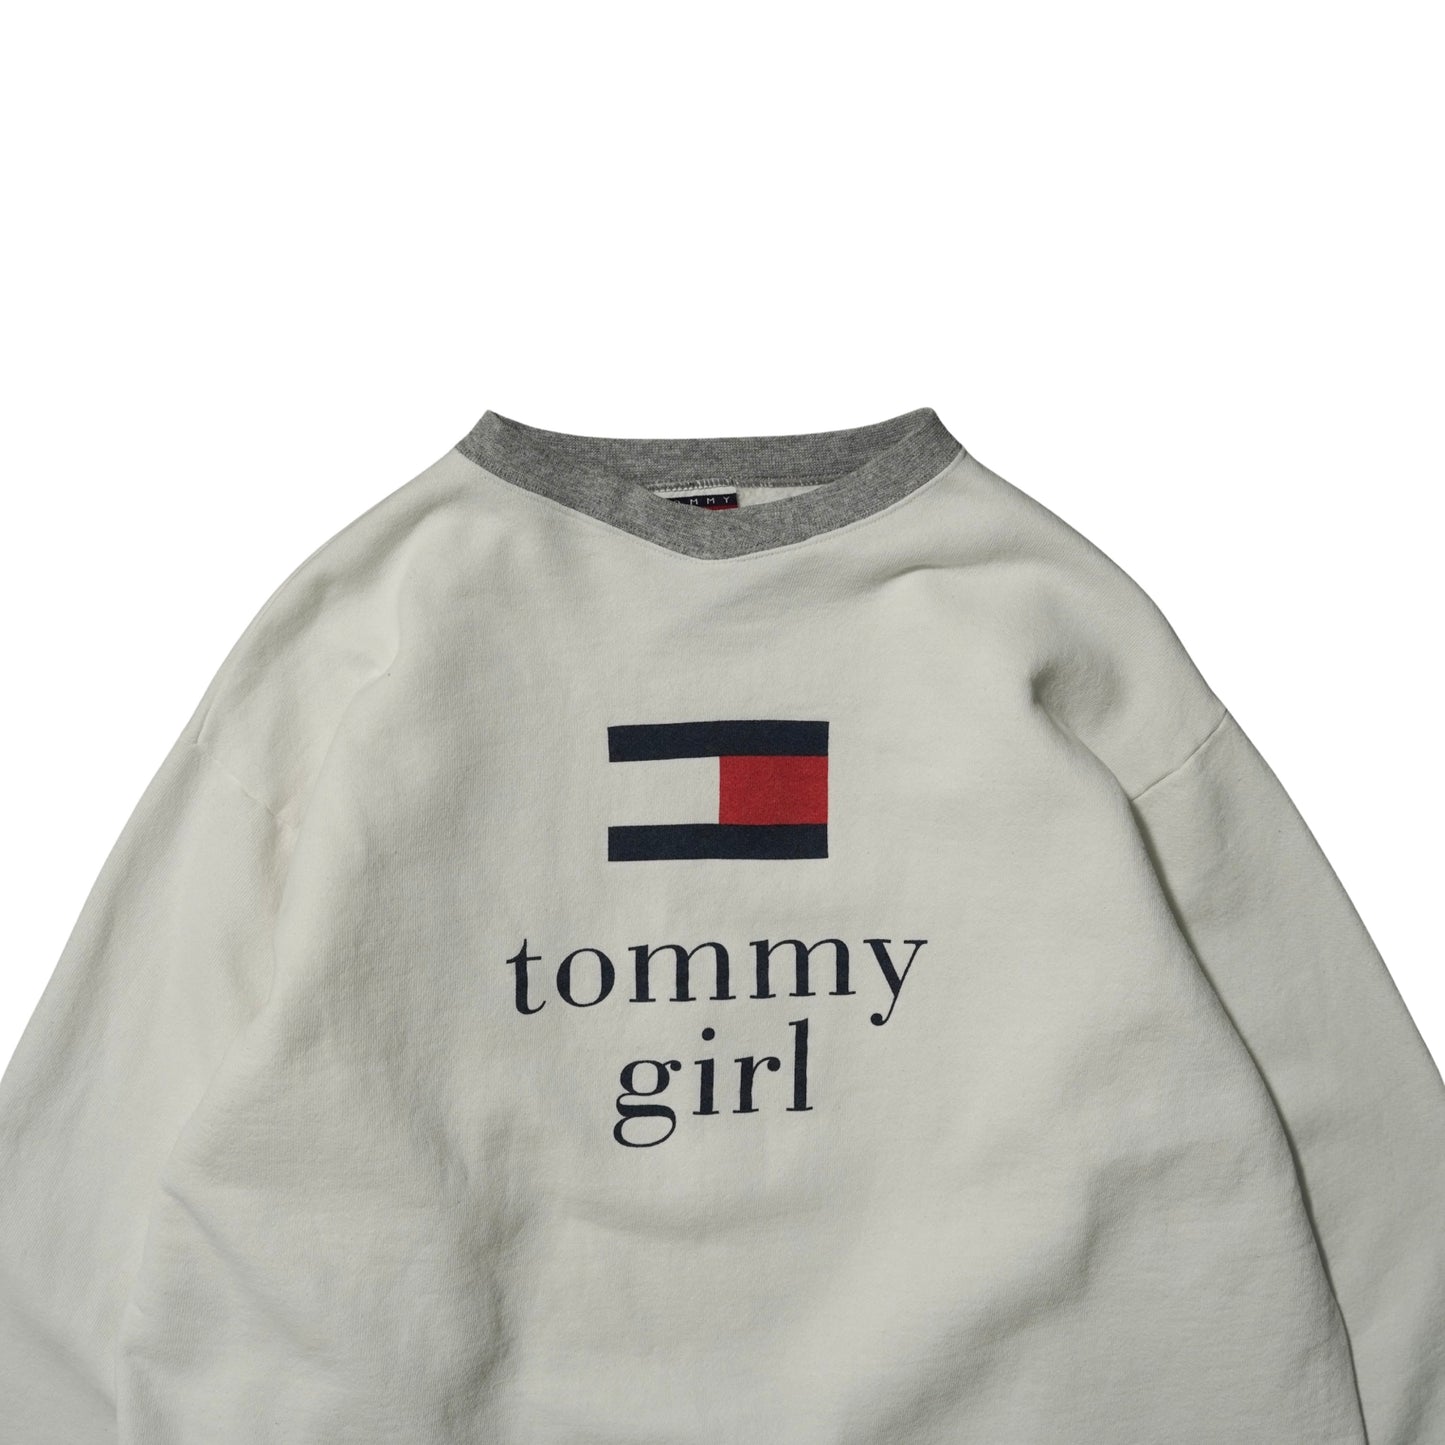 tommy girl Sweatshirt